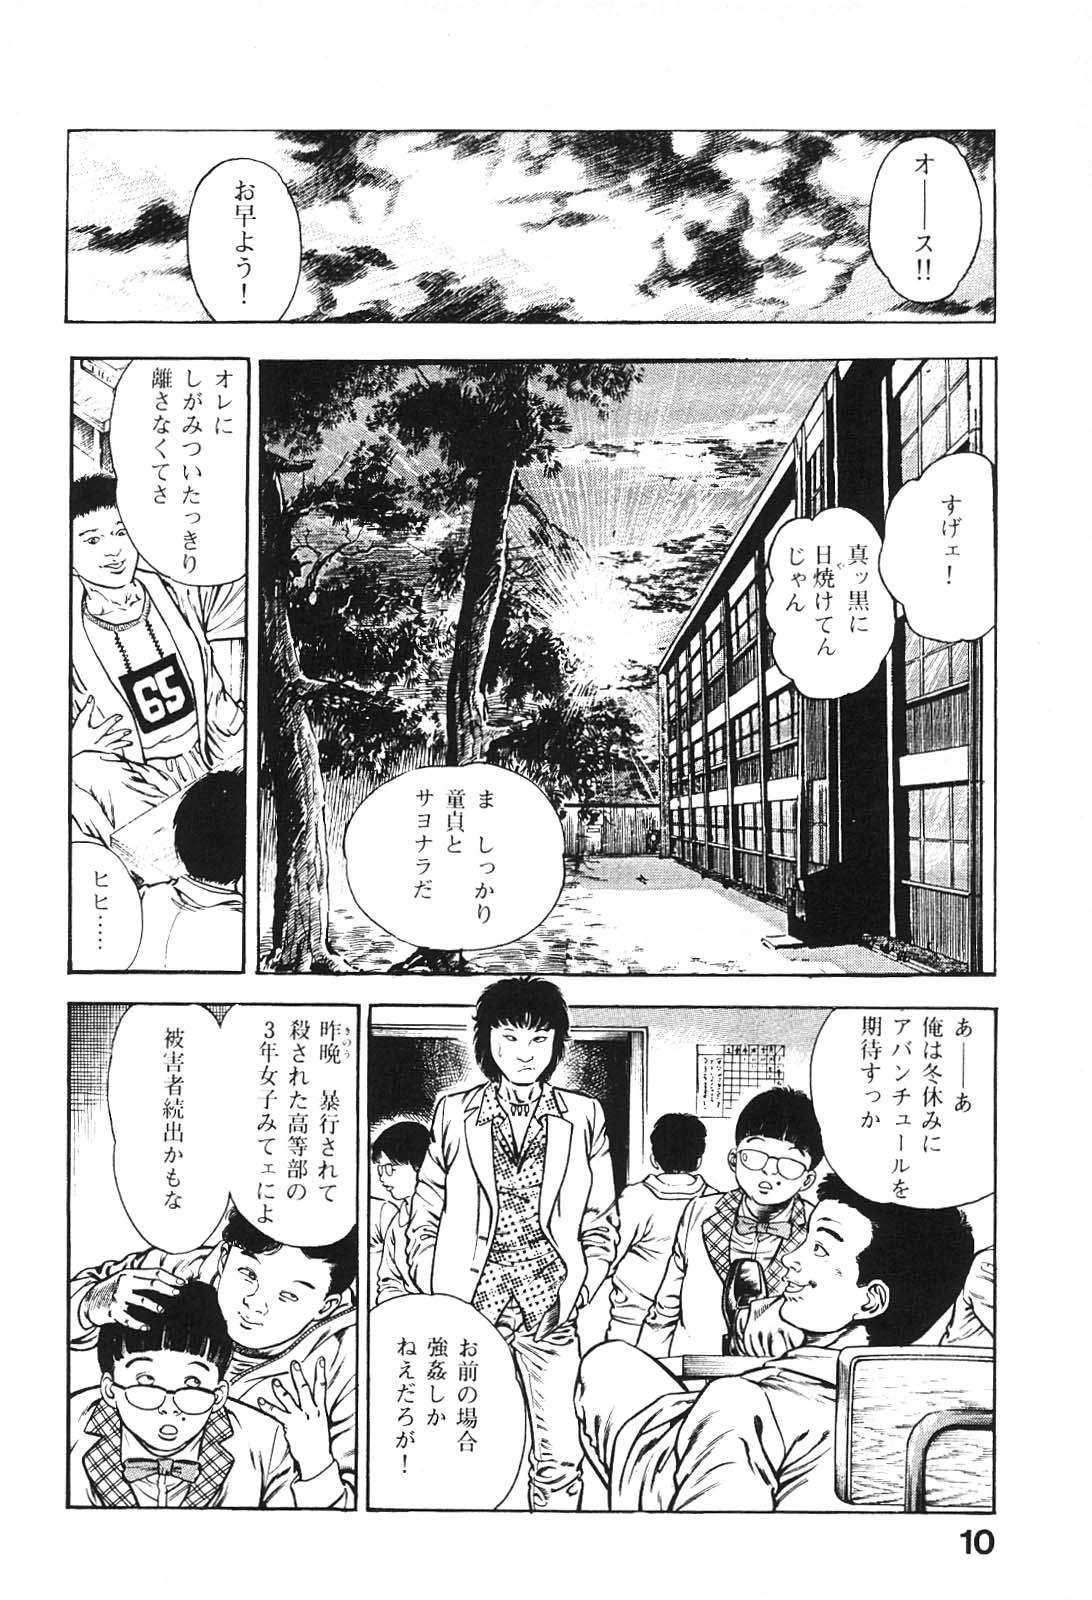 Jerk Urotsukidoji 6 Exhib - Page 10